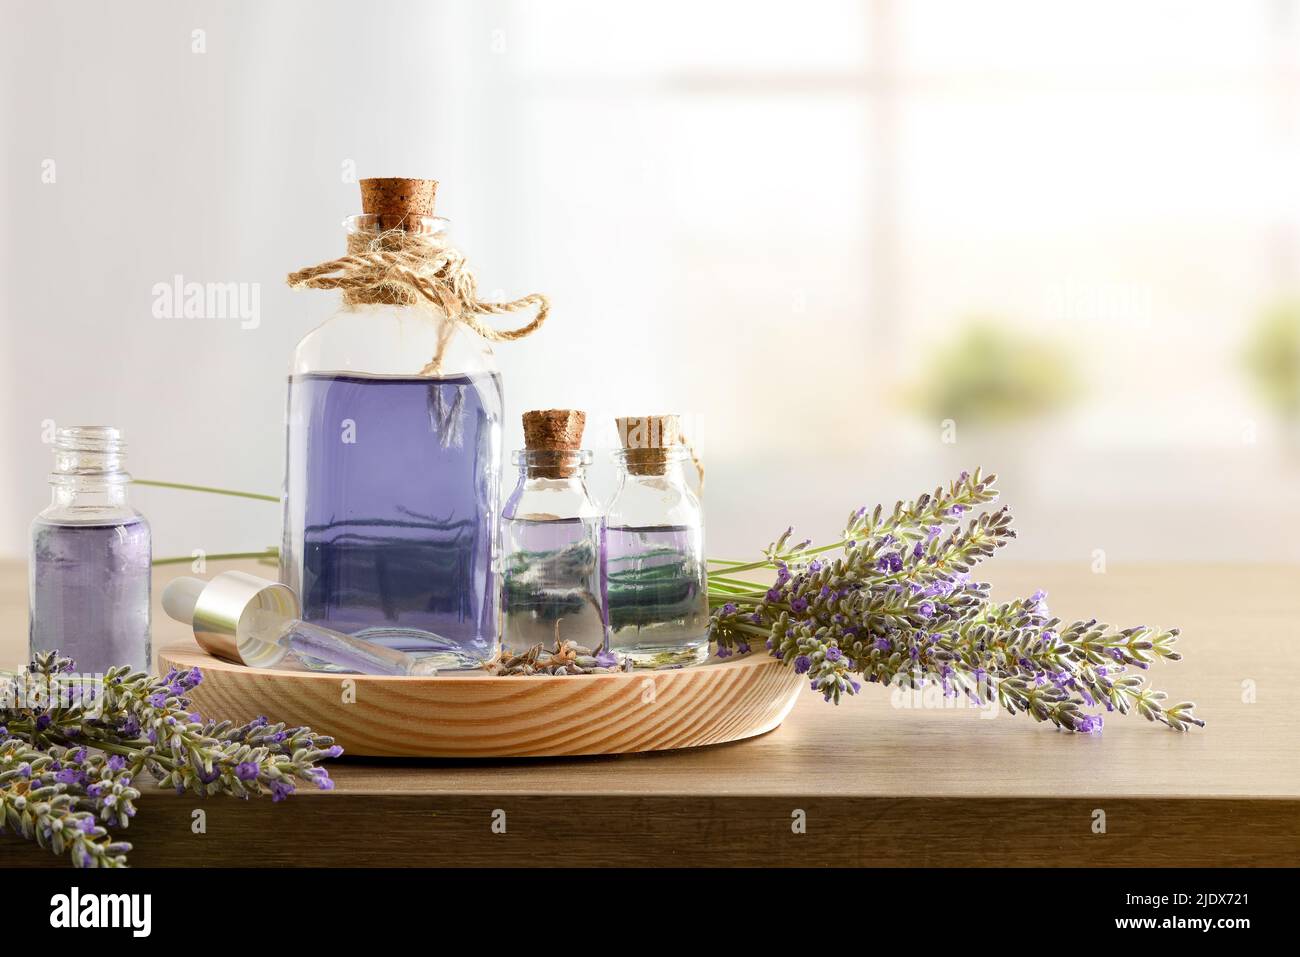 Glasbehälter mit Lavendelessenz mit Blumensträußen von Stacheln auf Holz in einem Raum. Vorderansicht. Horizontale Zusammensetzung. Stockfoto